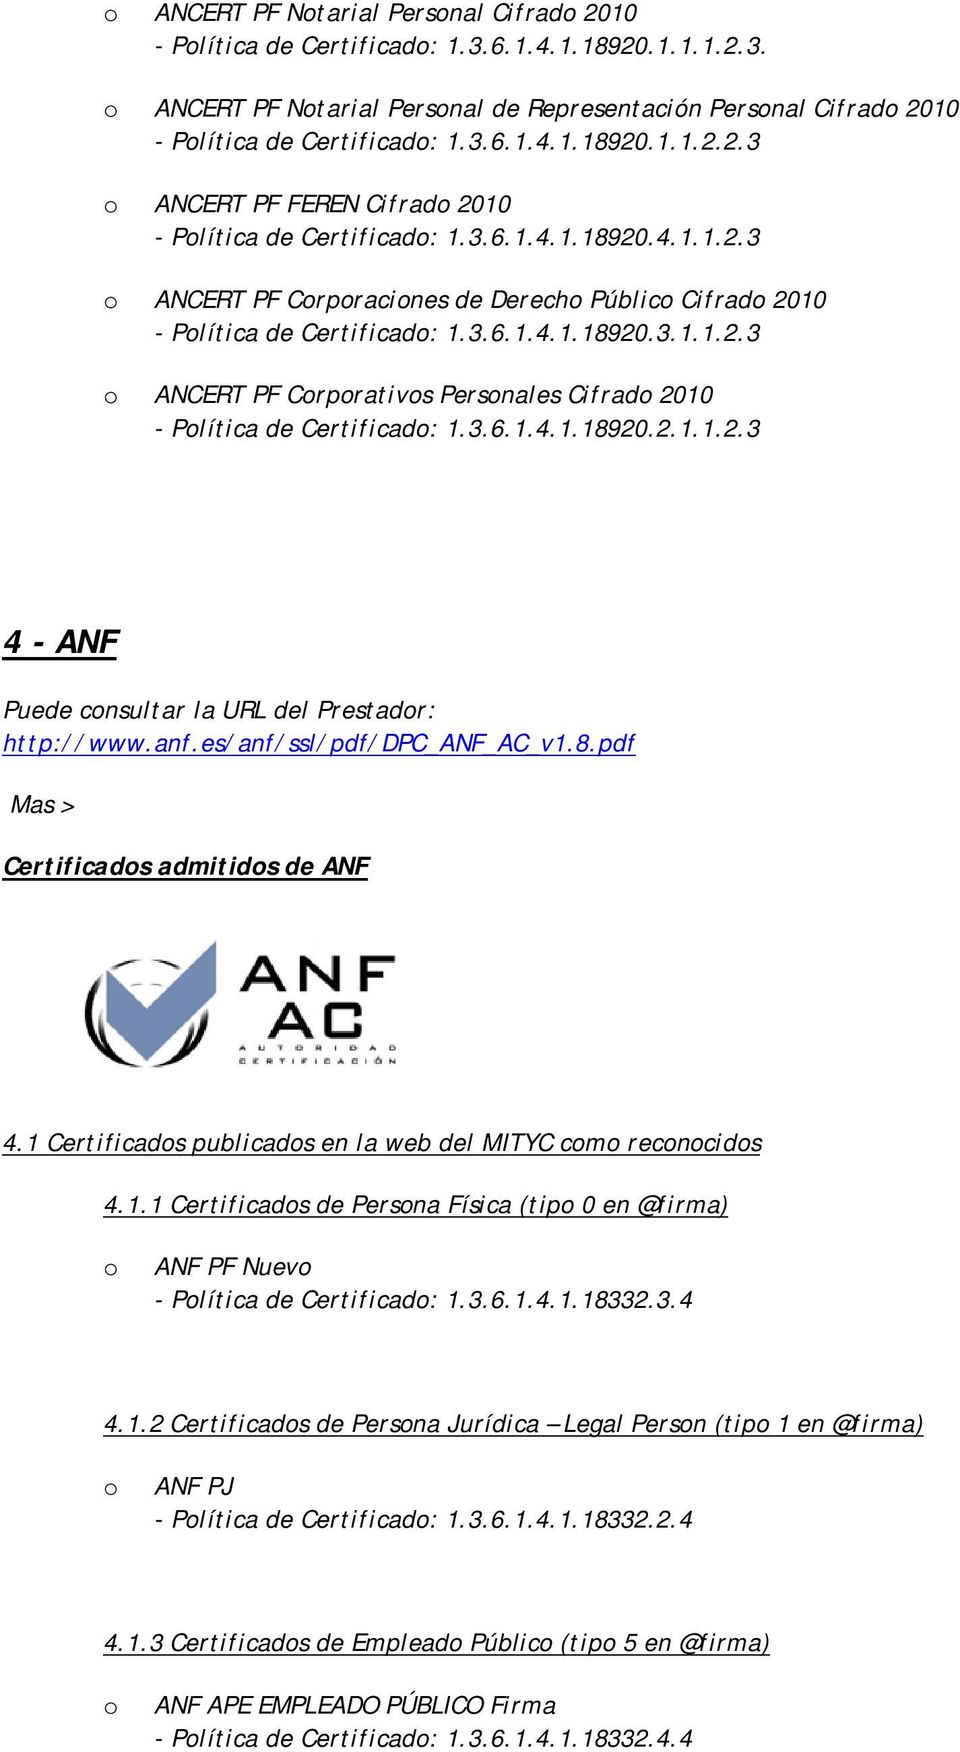 anf.es/anf/ssl/pdf/dpc_anf_ac_v1.8.pdf Certificads admitids de ANF 4.1 Certificads publicads en la web del MITYC cm recncids 4.1.1 Certificads de Persna Física (tip 0 en @firma) ANF PF Nuev - Plítica de Certificad: 1.